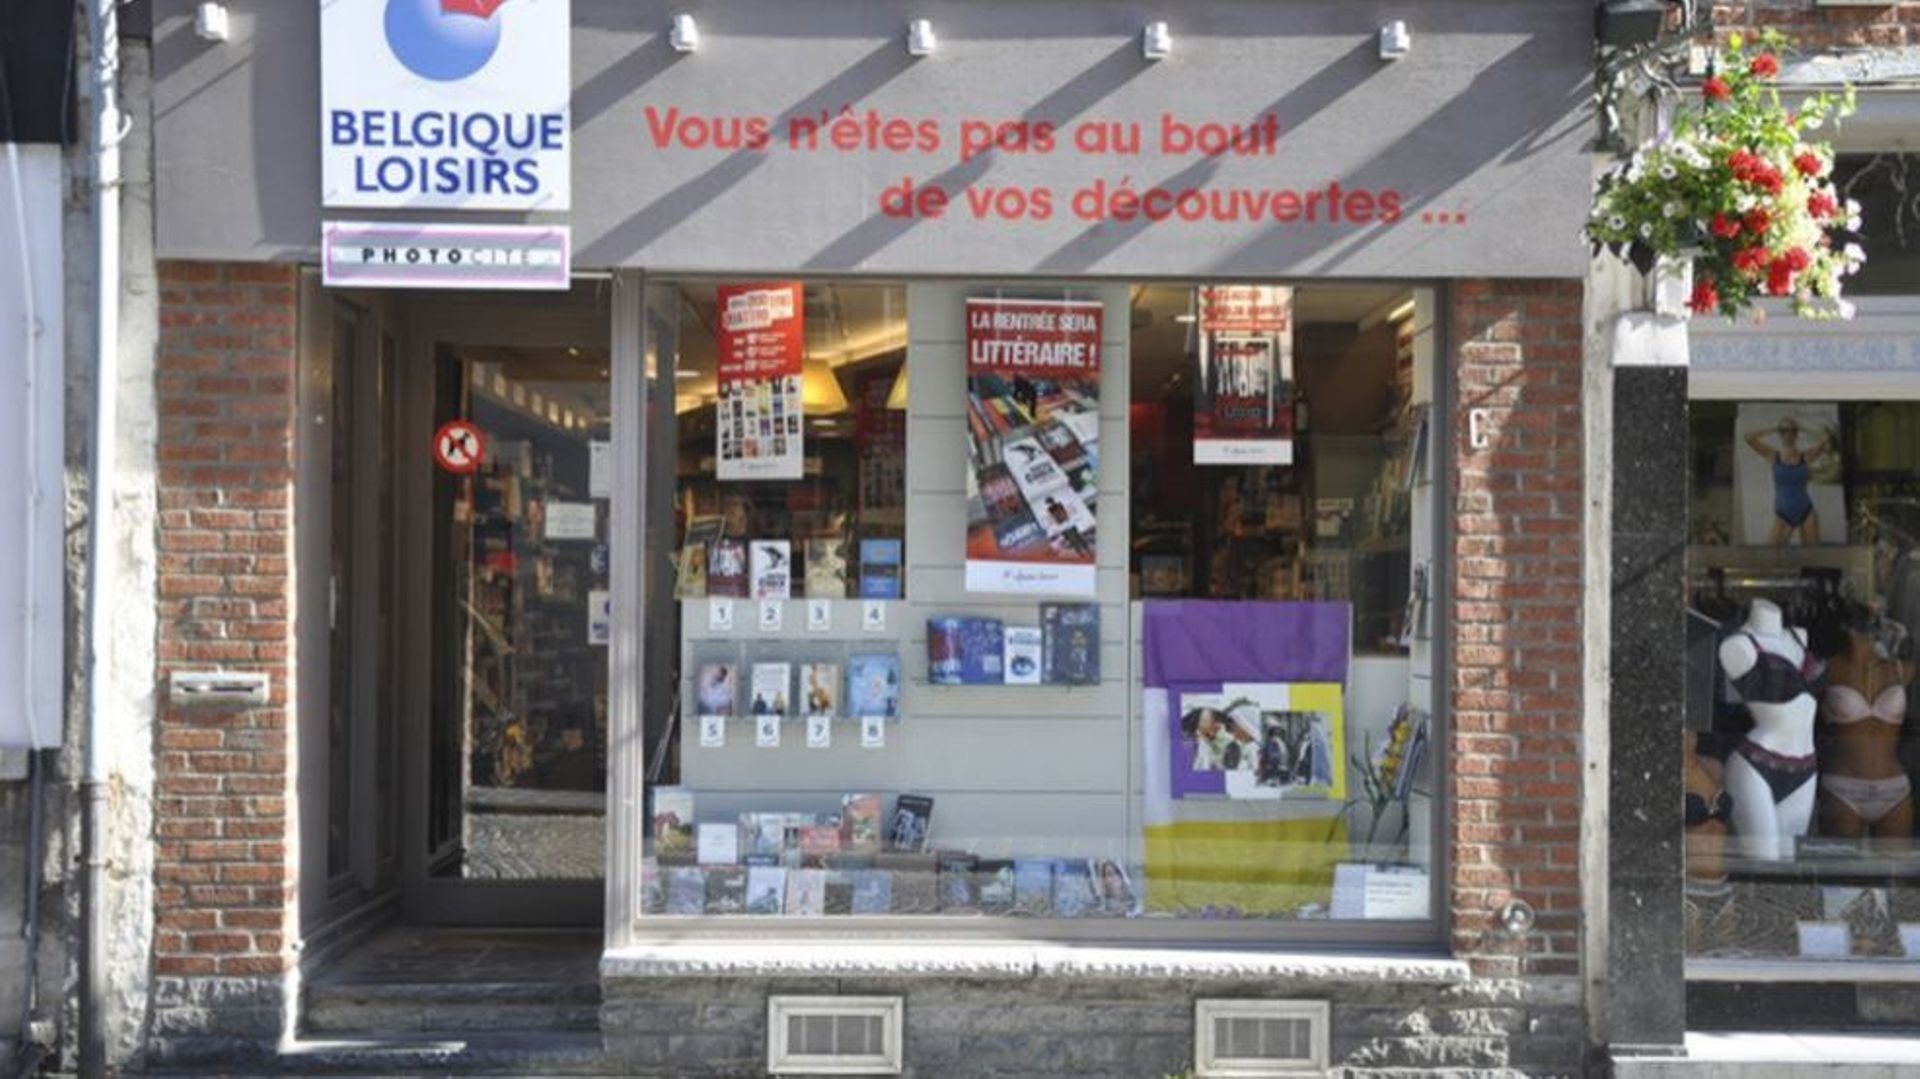 Belgique Loisirs, dont le siège est situé à Ath (Hainaut) et qui comptait encore plusieurs magasins, explique avoir été contrainte par la crise sanitaire à arrêter définitivement ses activités.